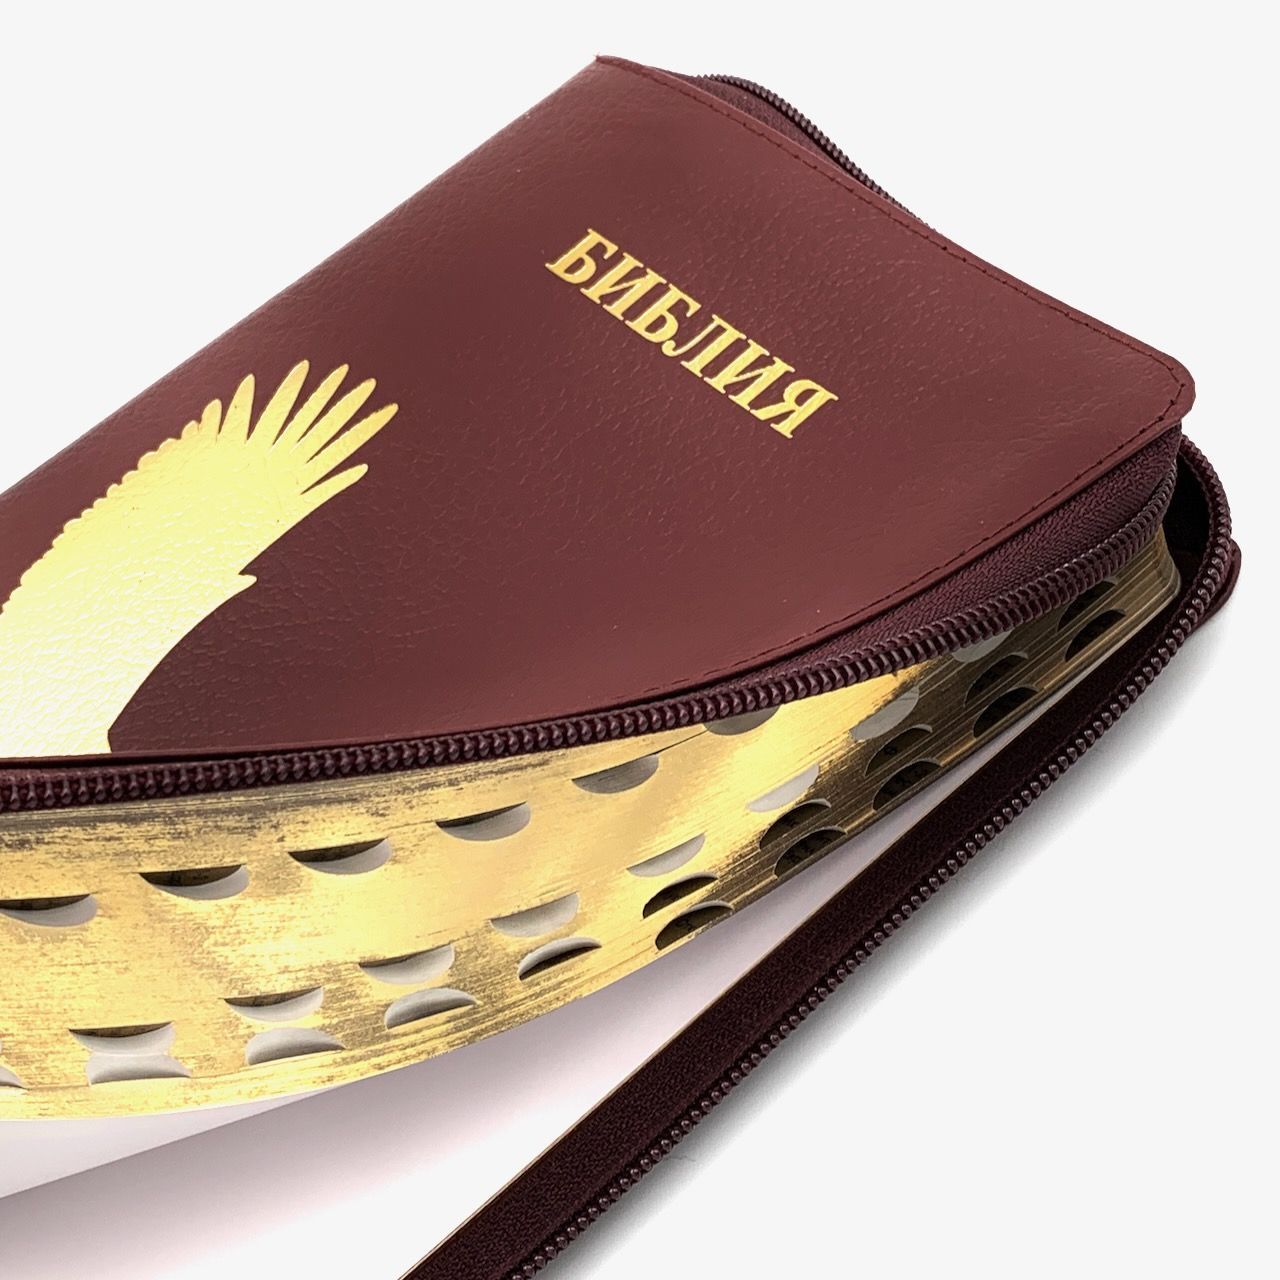 Библия 053zti код A6 дизайн "золотой орел", кожаный переплет на молнии с индексами, цвет бордо пятнистый, формат 140*202 мм